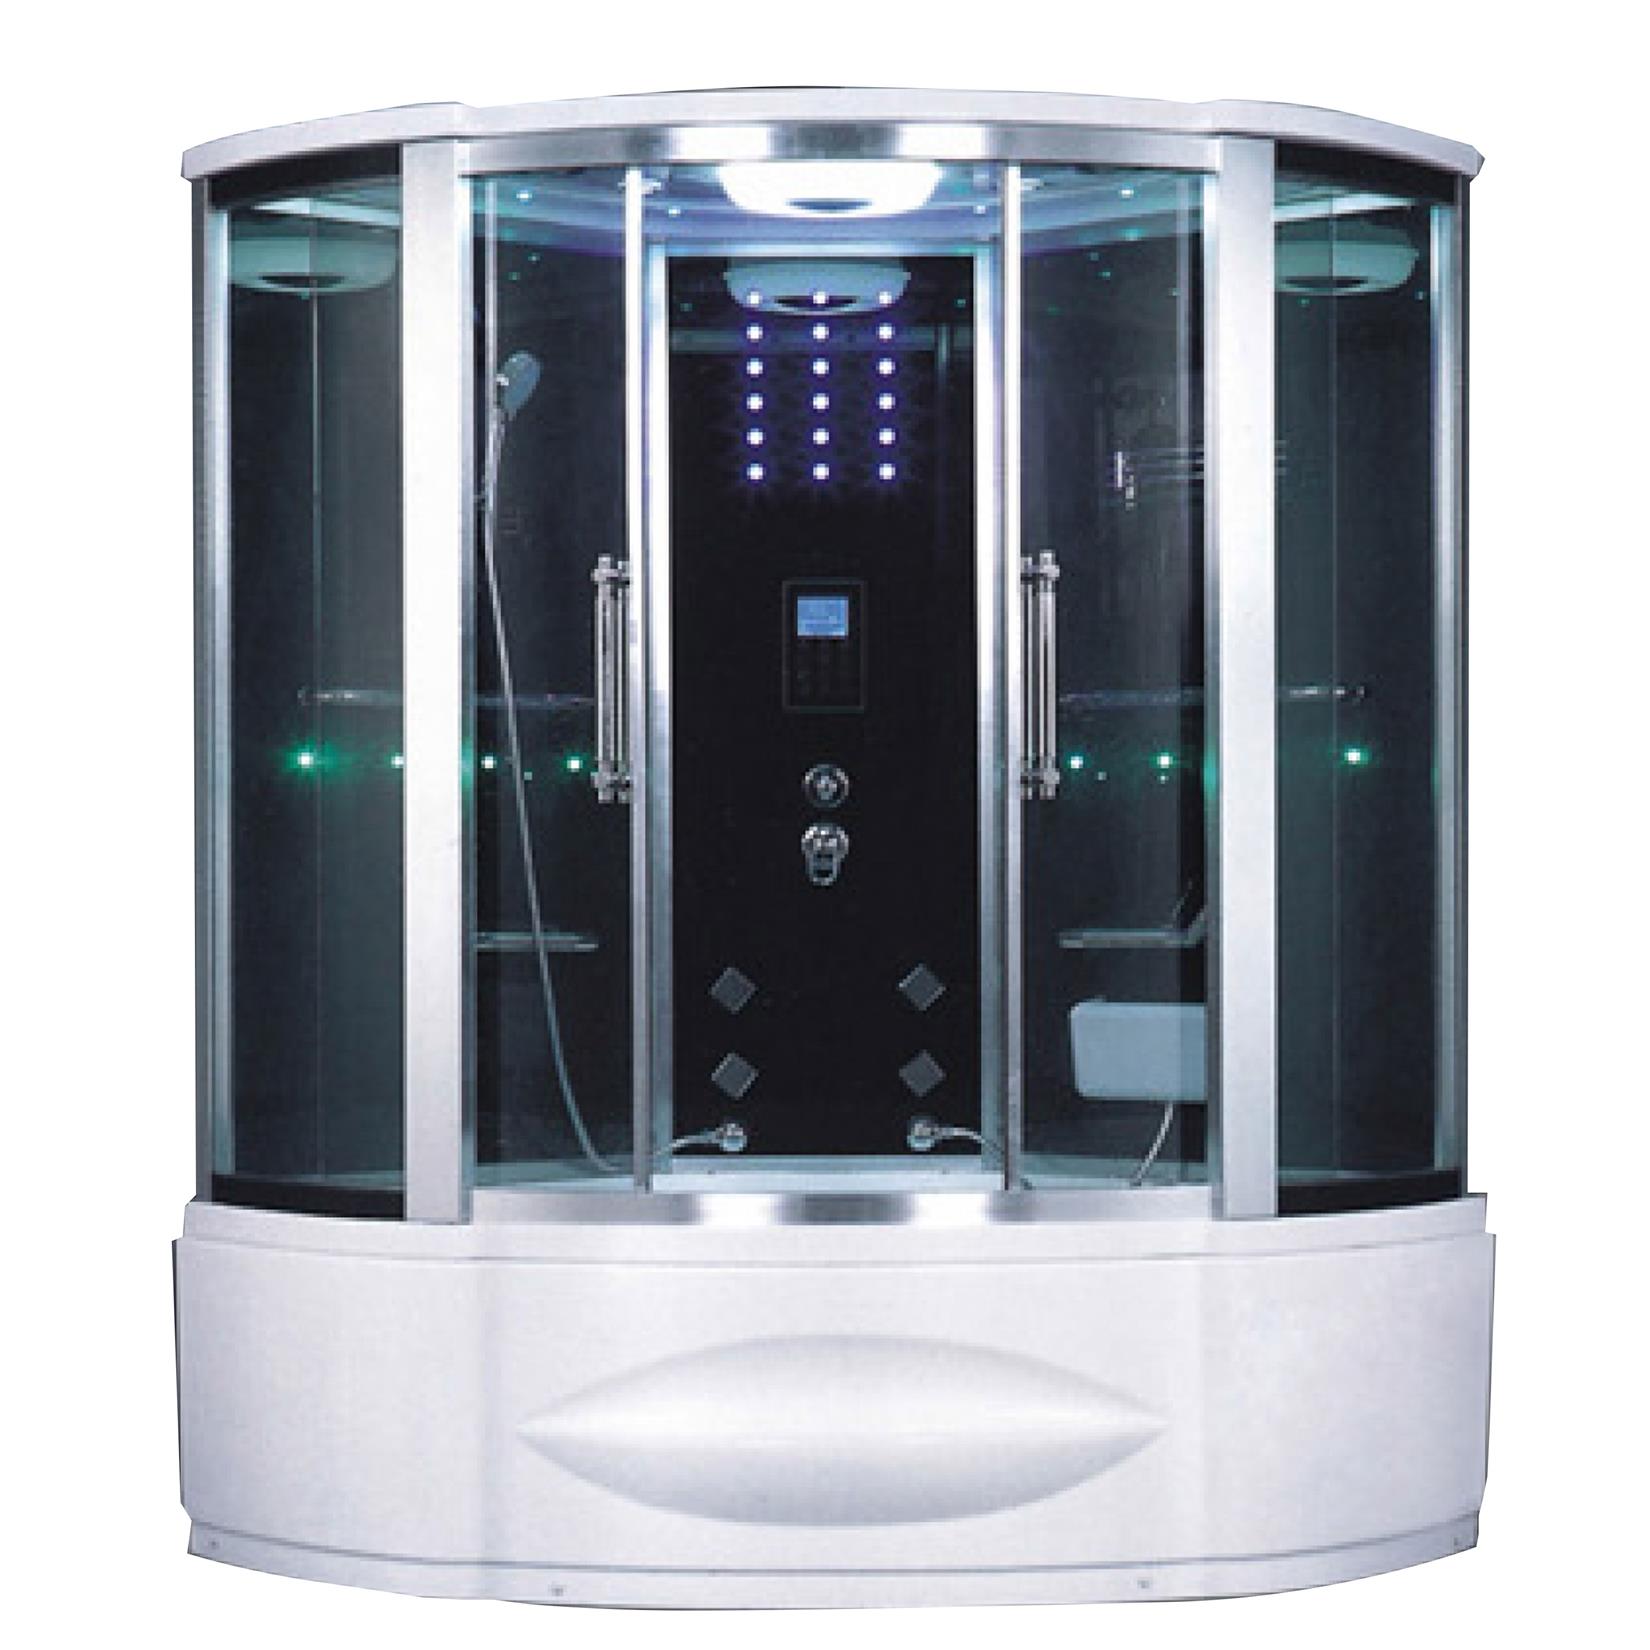 Steam Bath Design/ Personal Acrylic Steam Cabinet Shower/Dubai Steam Room Supplier  HS-A9146